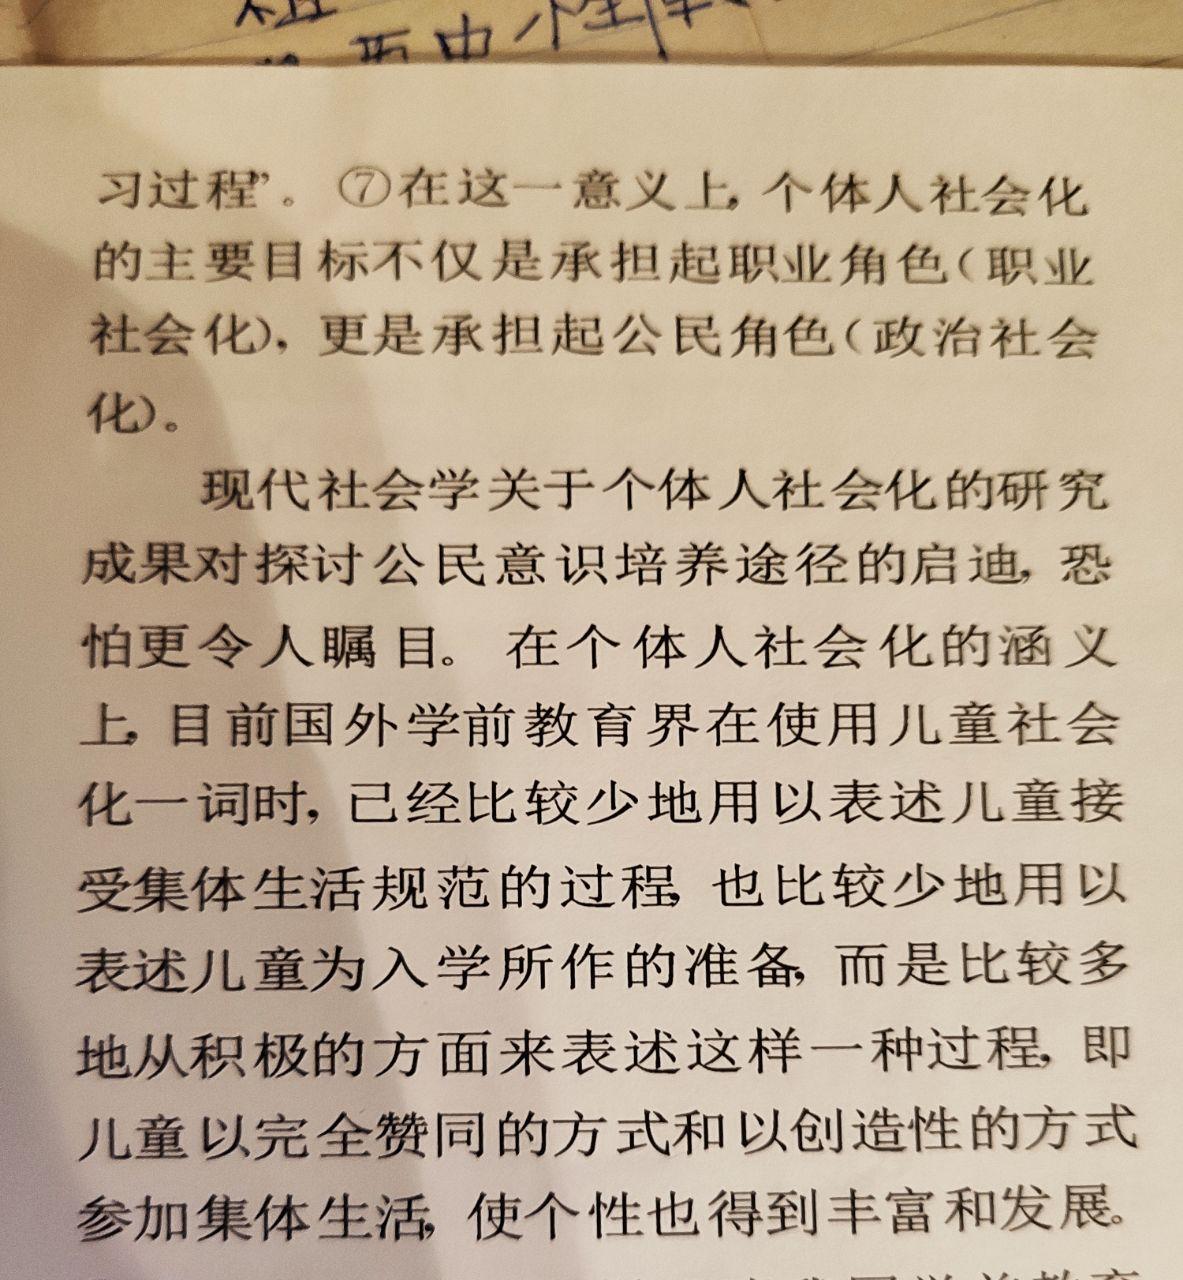 переводчик фото текста китайского